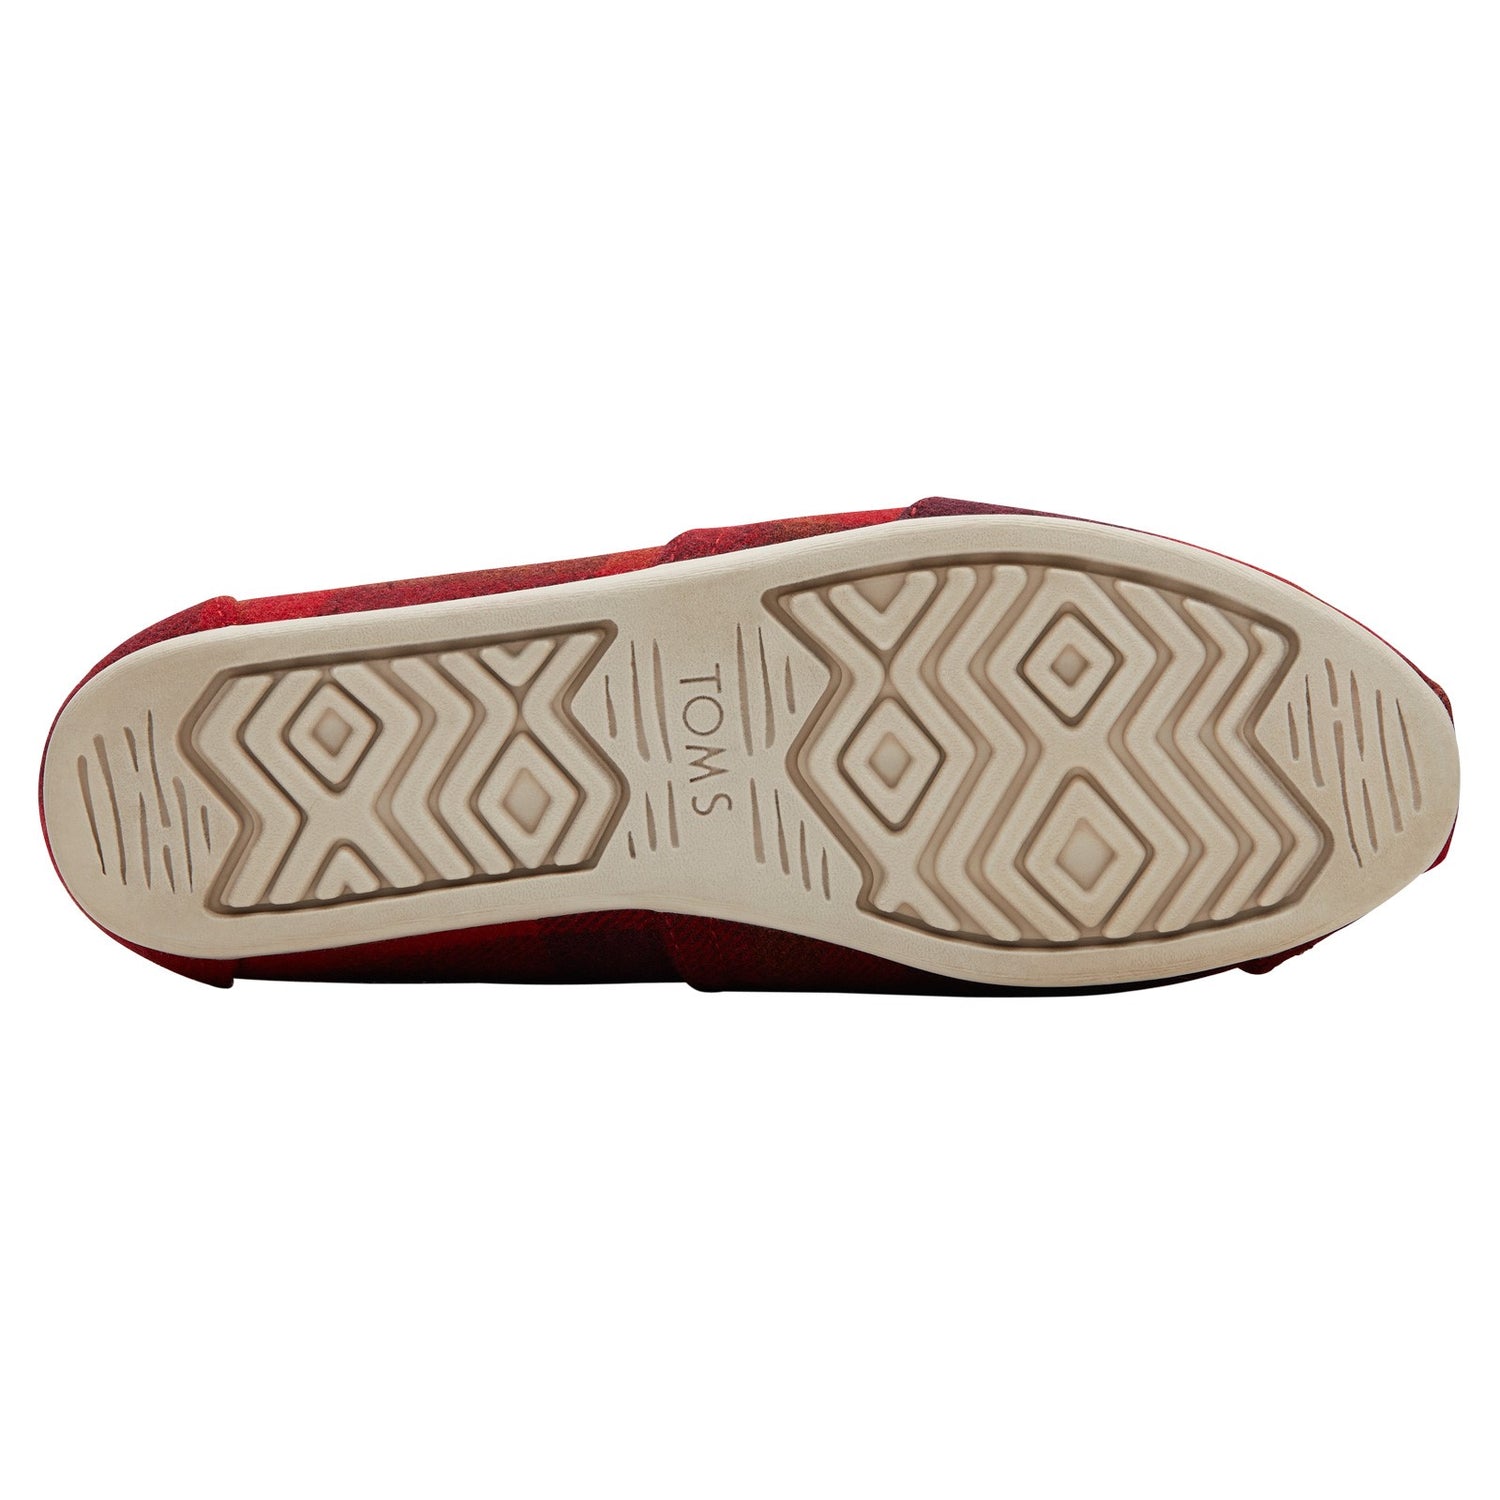 Peltz Shoes  Women's Toms Alpargata Faux Fur Lined Slip-On RED PLAID 10016748